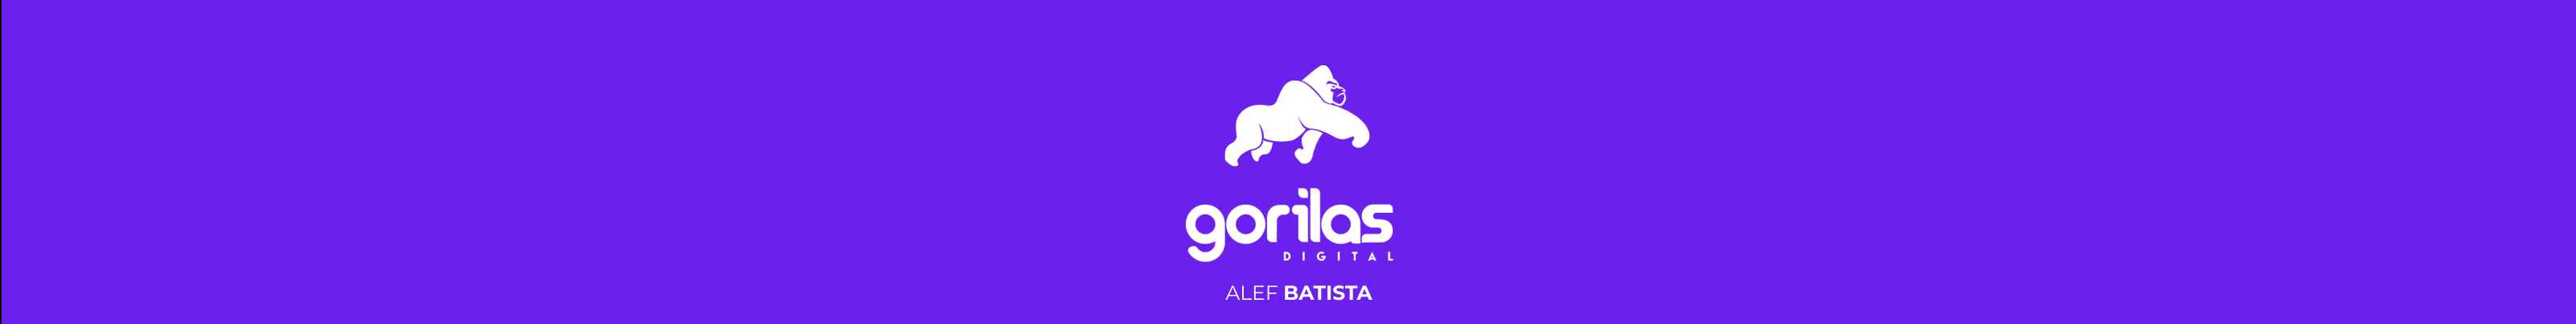 GORILAS Digitals profilbanner